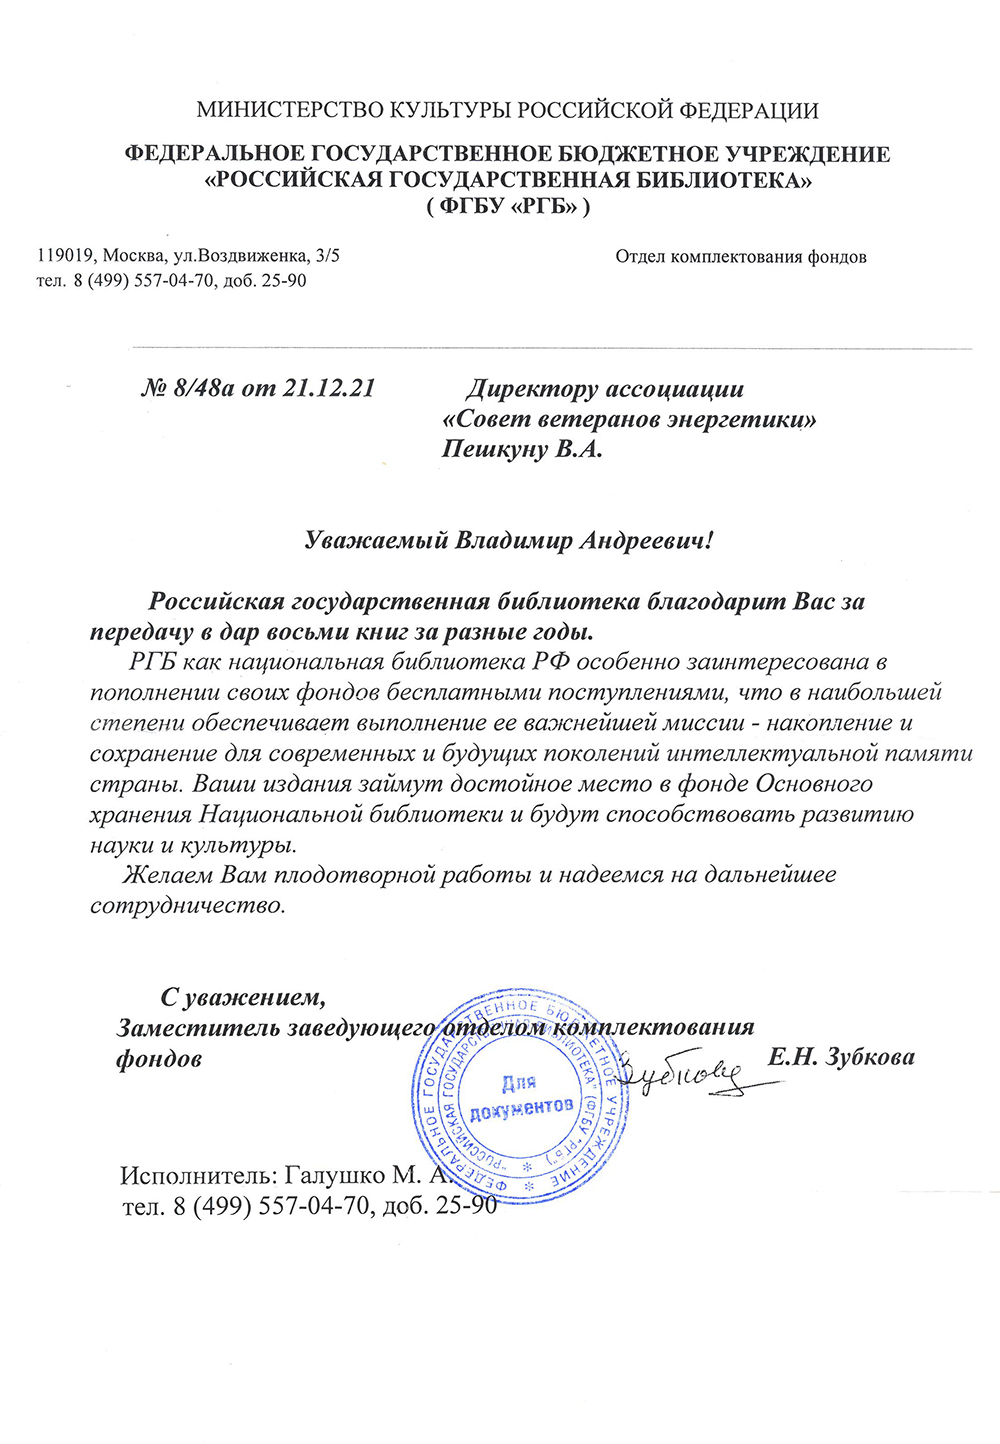 Ассоциация получила благодарственное письмо от библиотеки им. Ленина